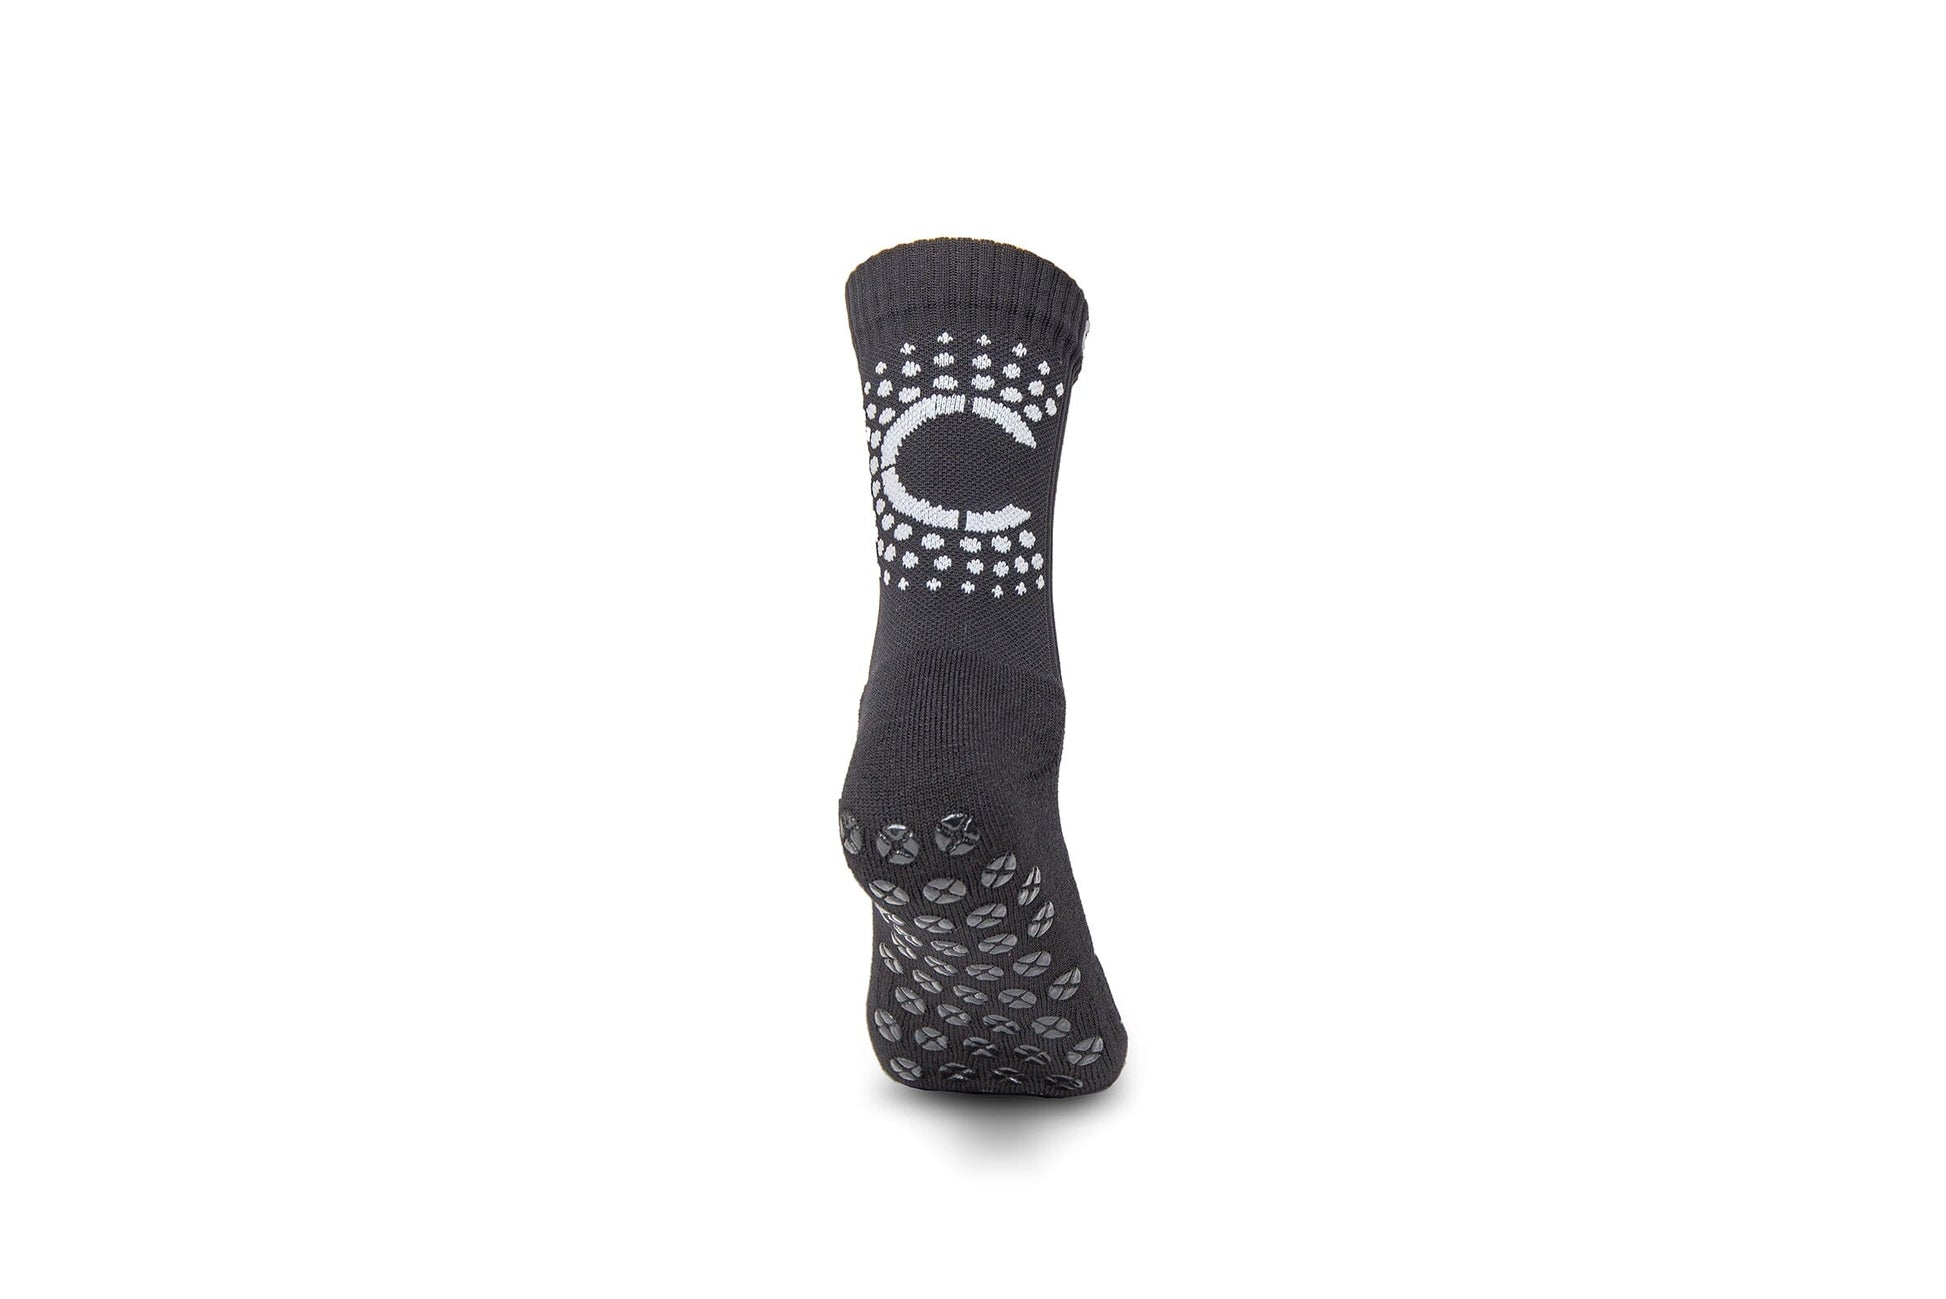 Control Sox 2.0 - Black Grip Socks Control Sox 